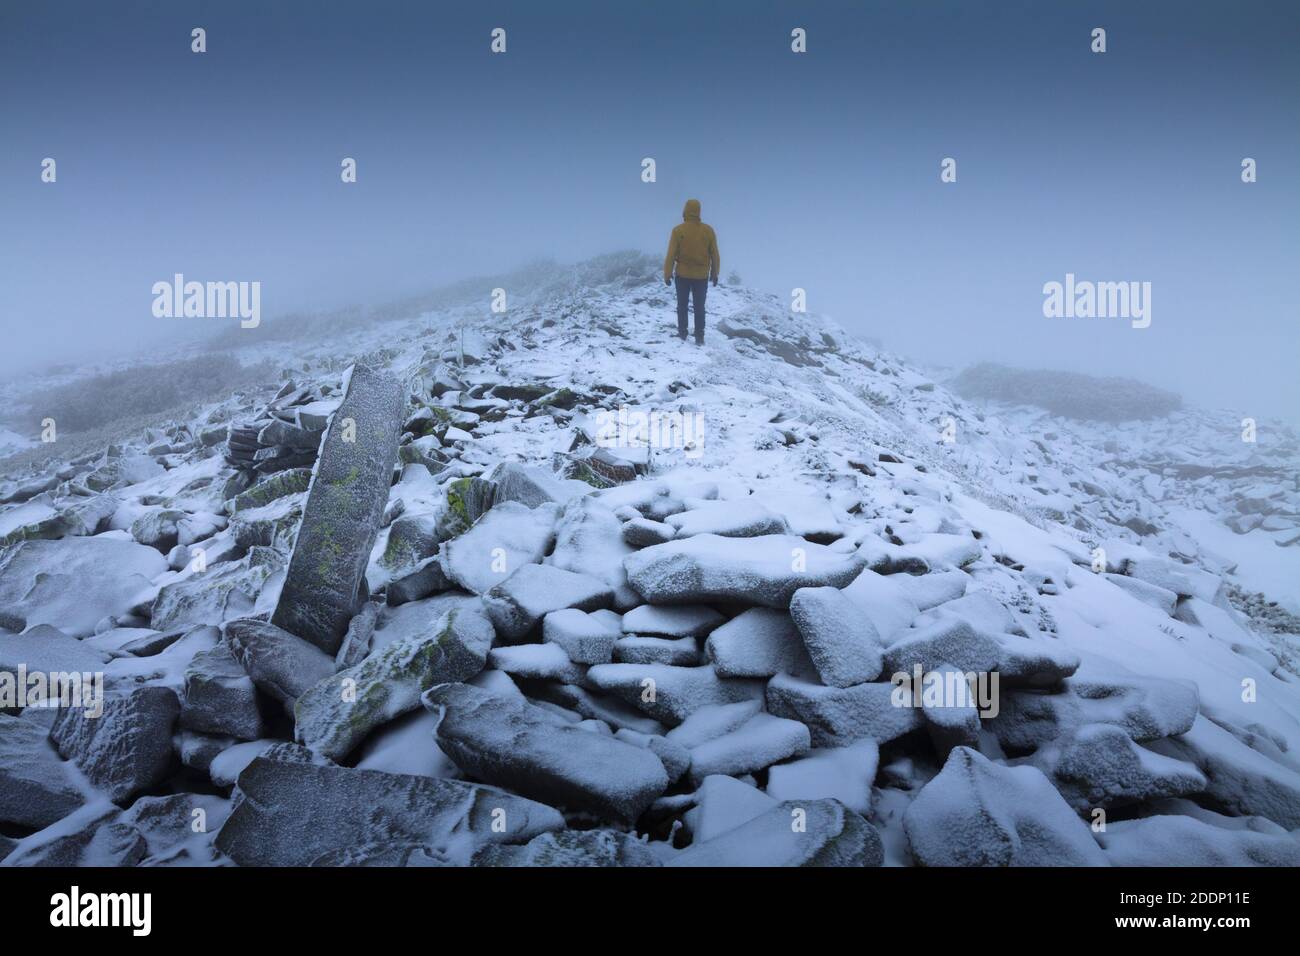 Un solitaire Wanderer dans un paysage enneigé. Solitude, montagnes, hiver, brume, neige. Banque D'Images